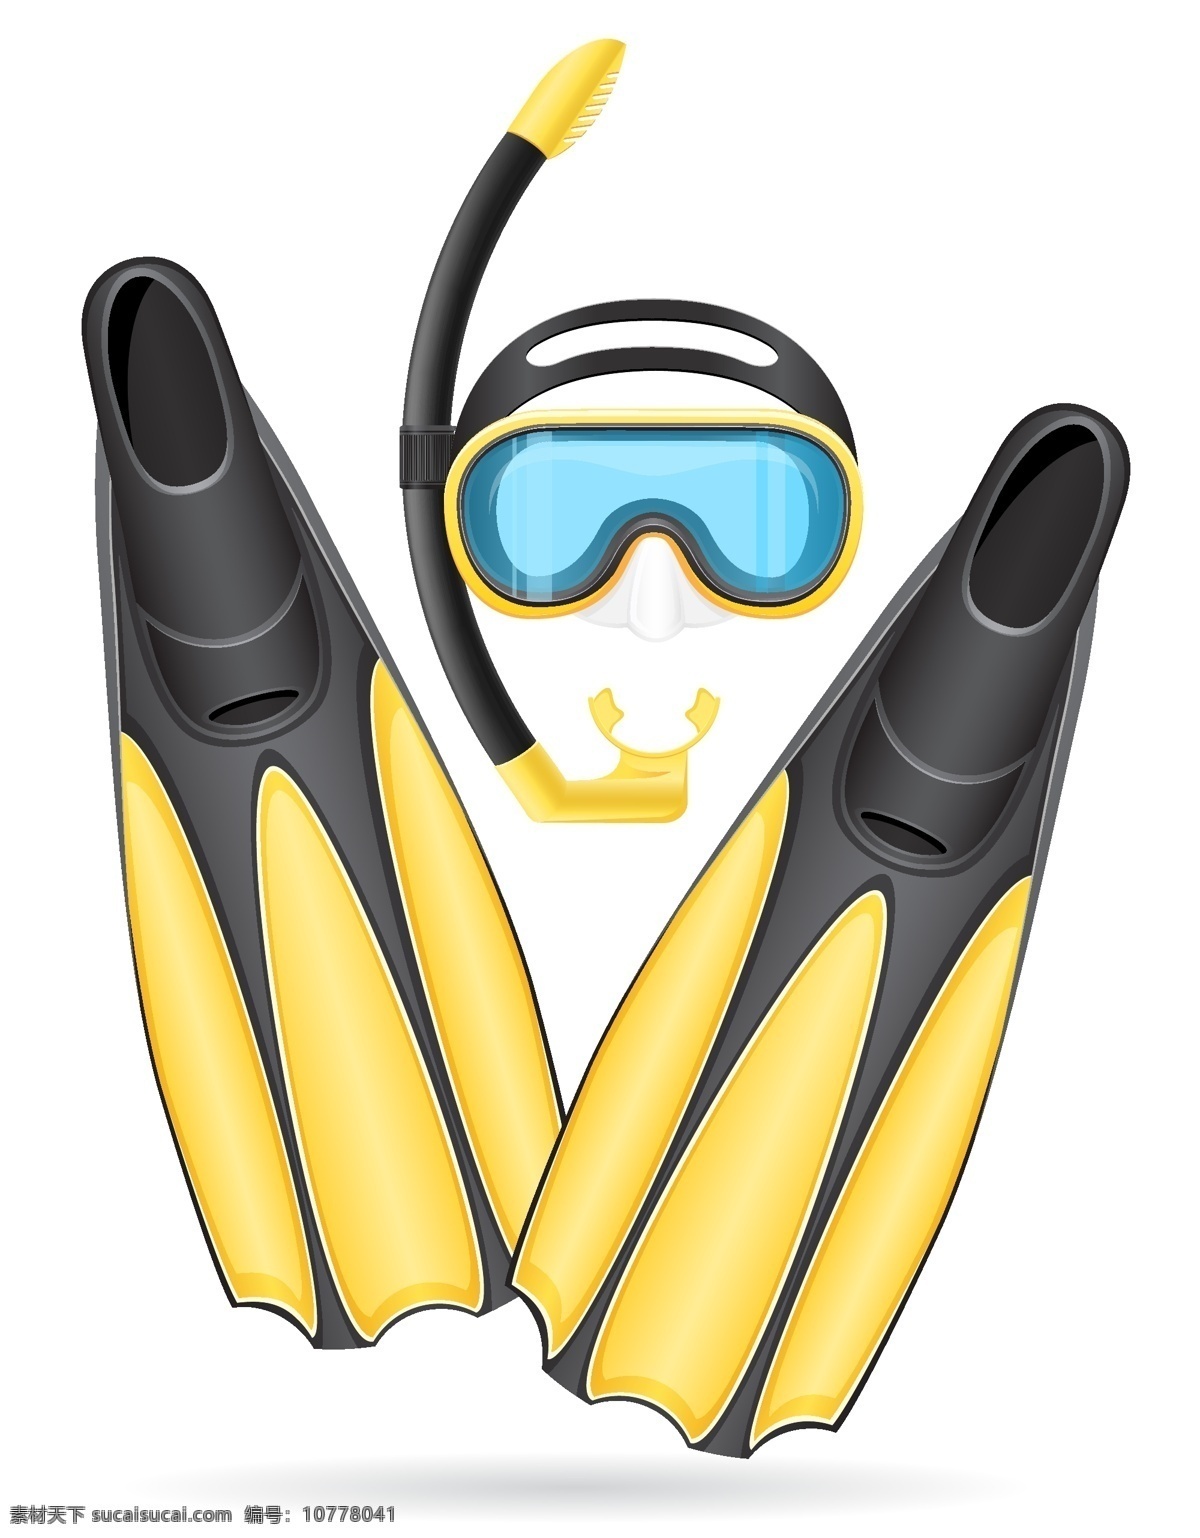 潜水 潜水镜 潜水用品 潜水用具 氧气瓶 潜水衣 深海潜水 体育运动 文化艺术